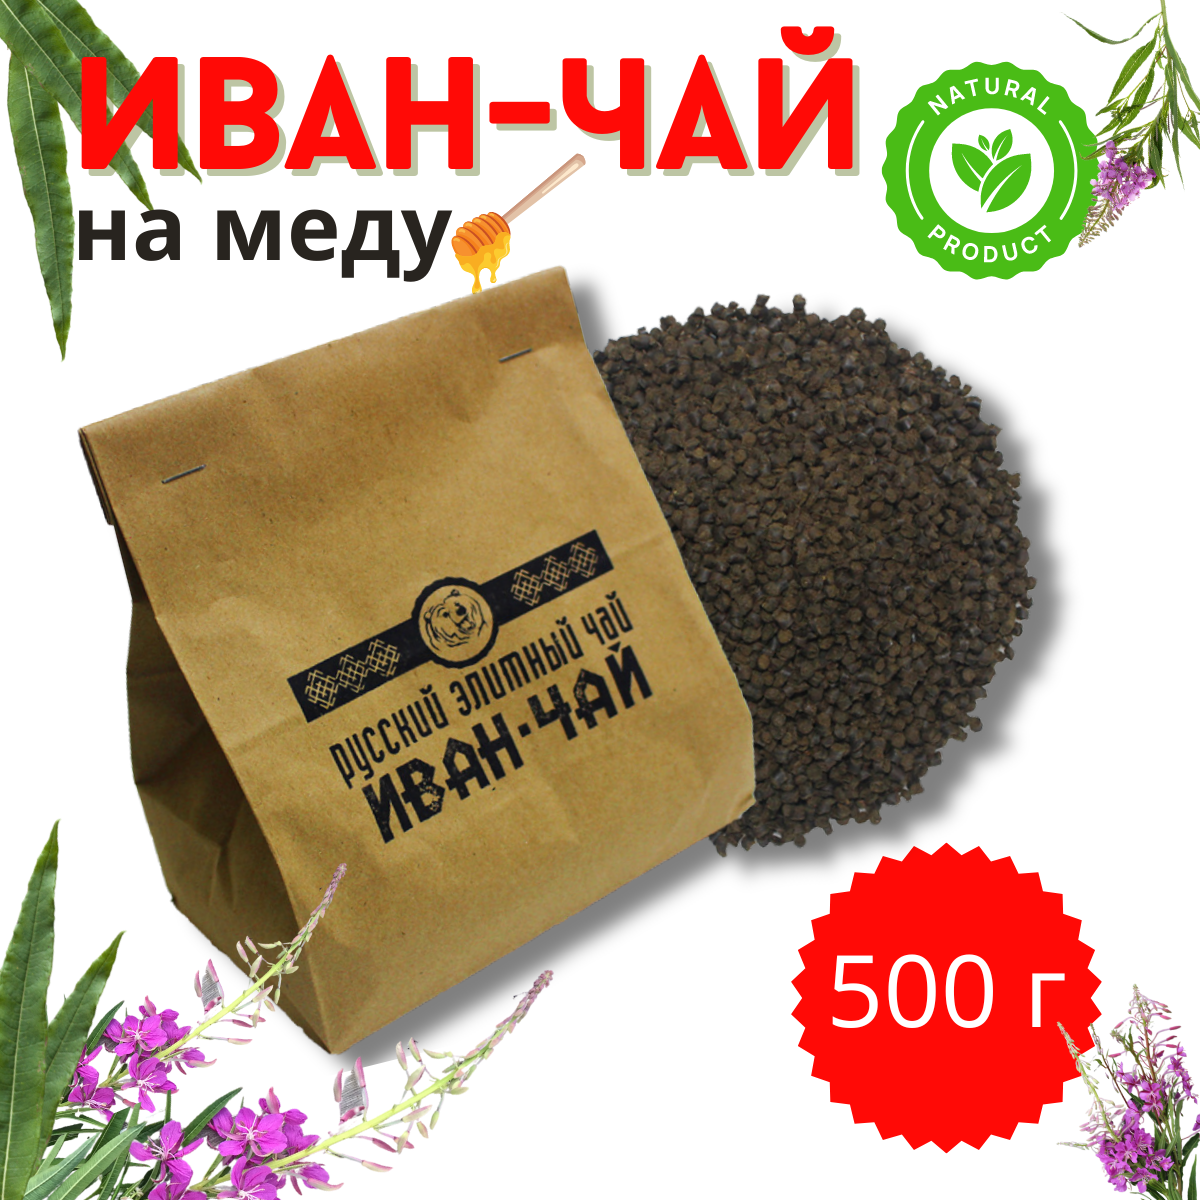 Иван чай Русский Элитный Чай ферментированный, гранулированный на меду 500 г.